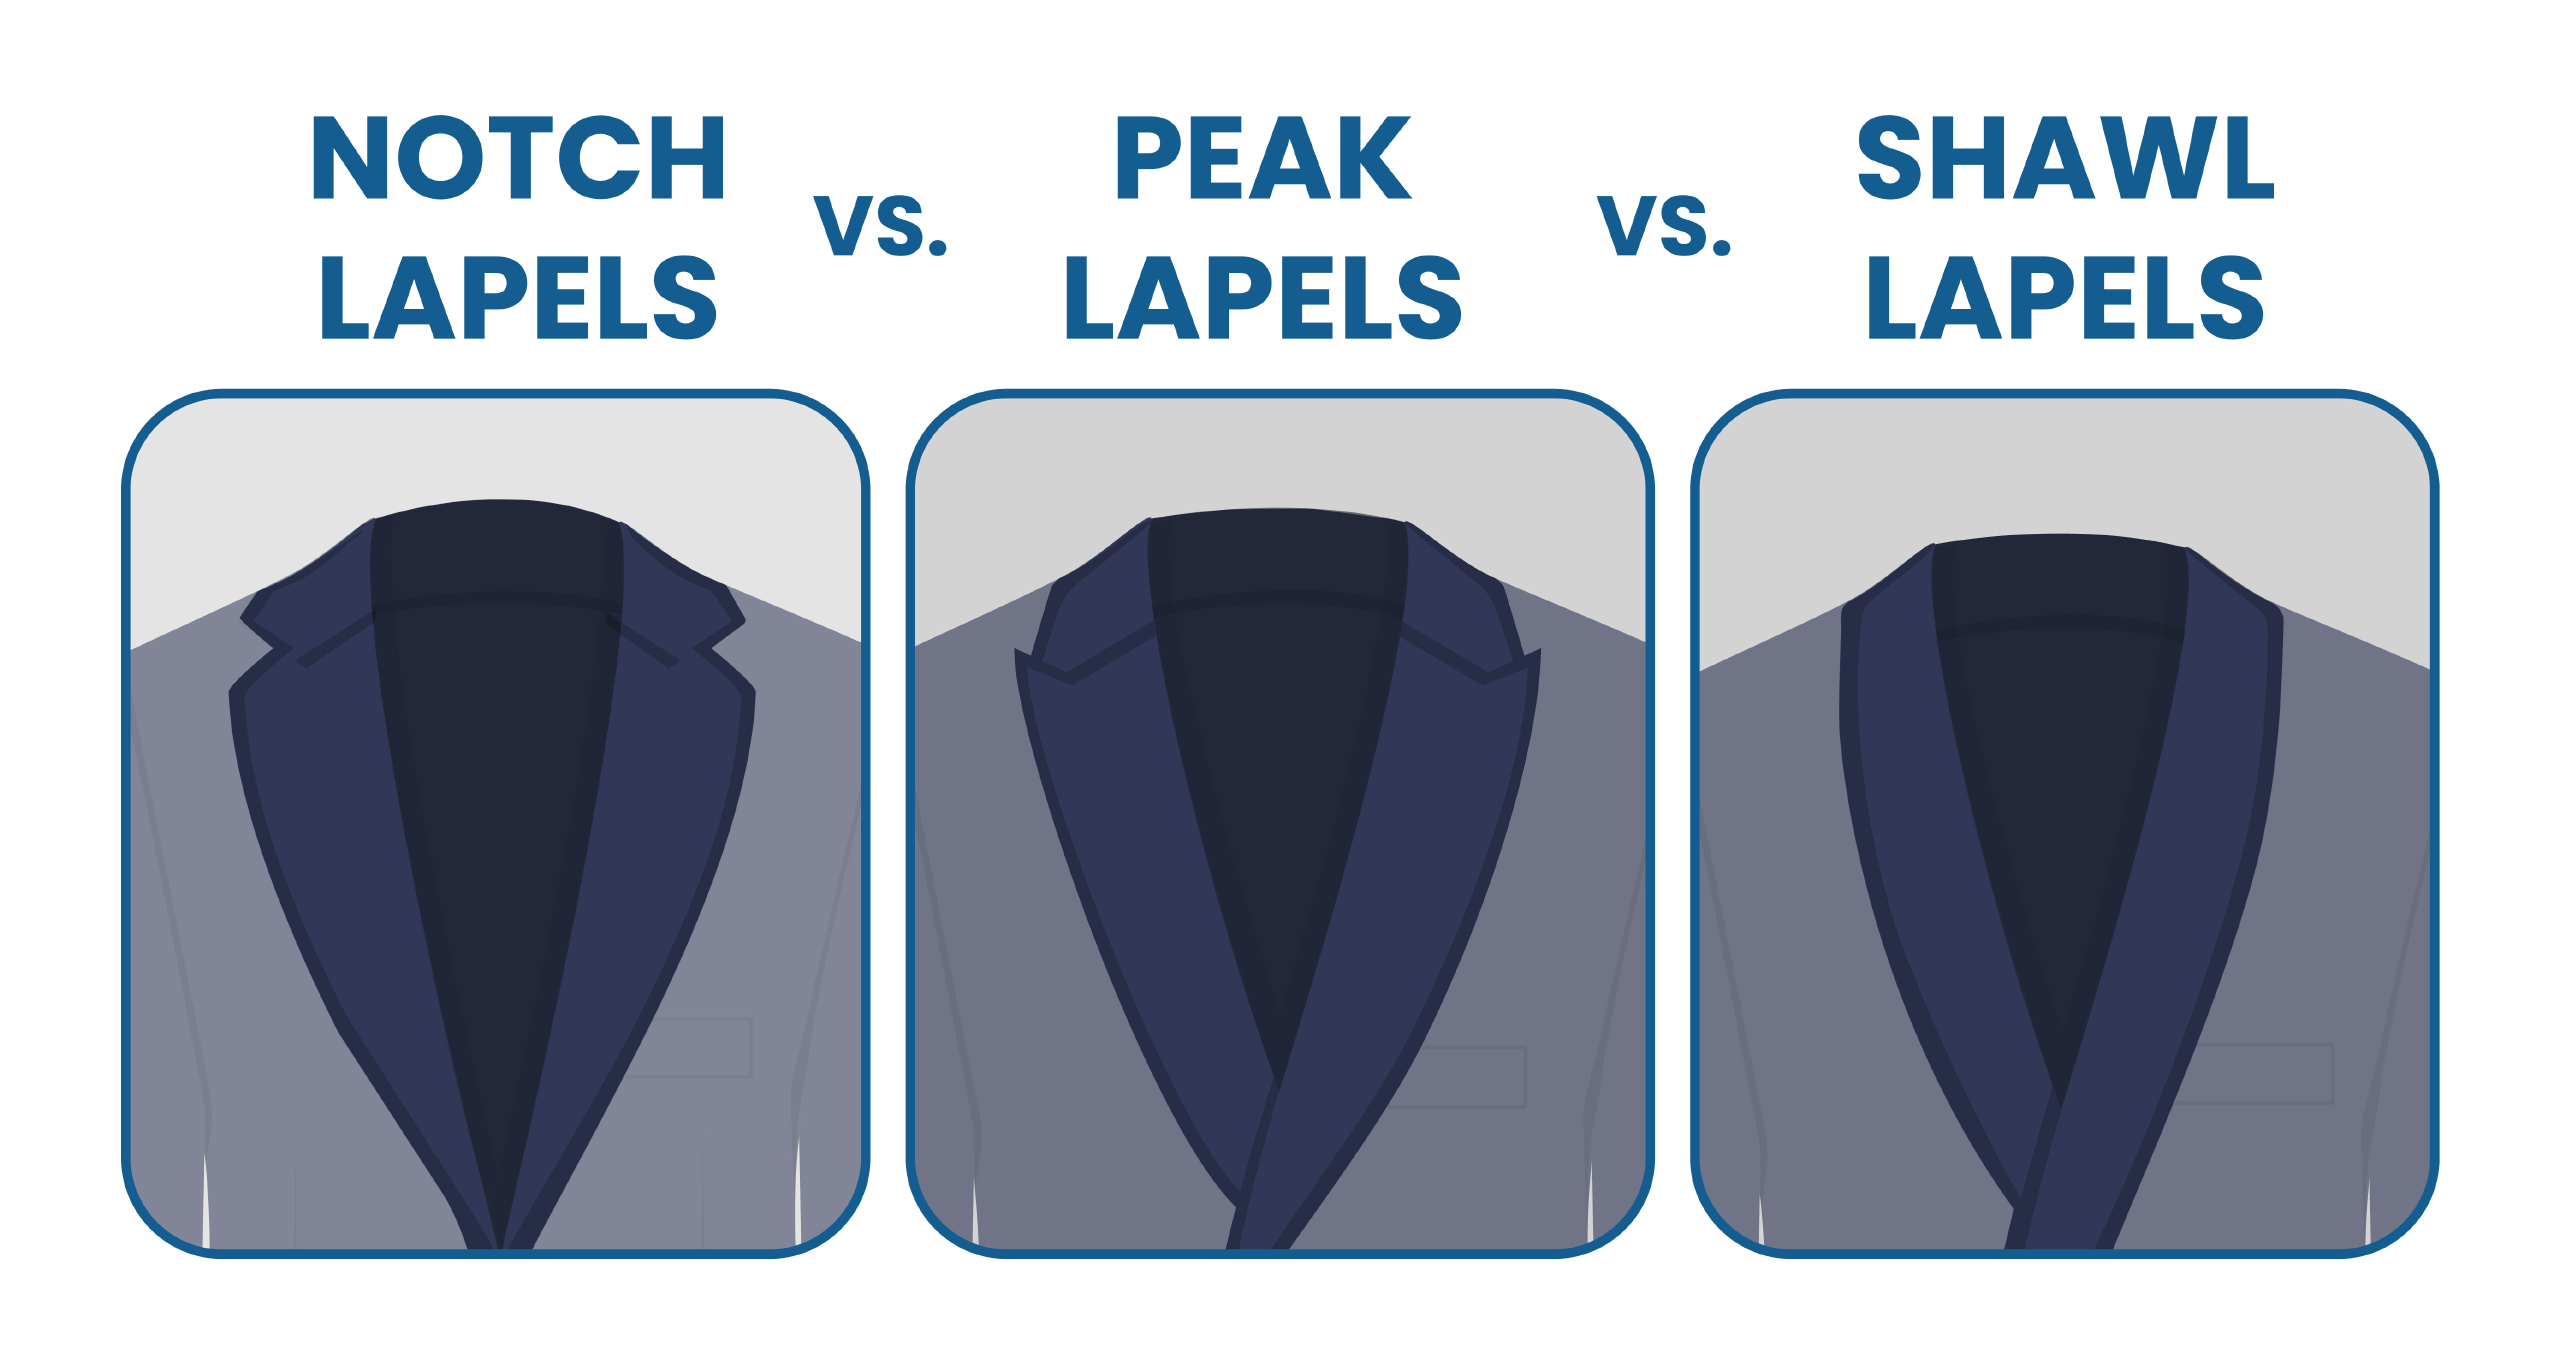 notch lapel vs. peak lapel vs. shawl lapel